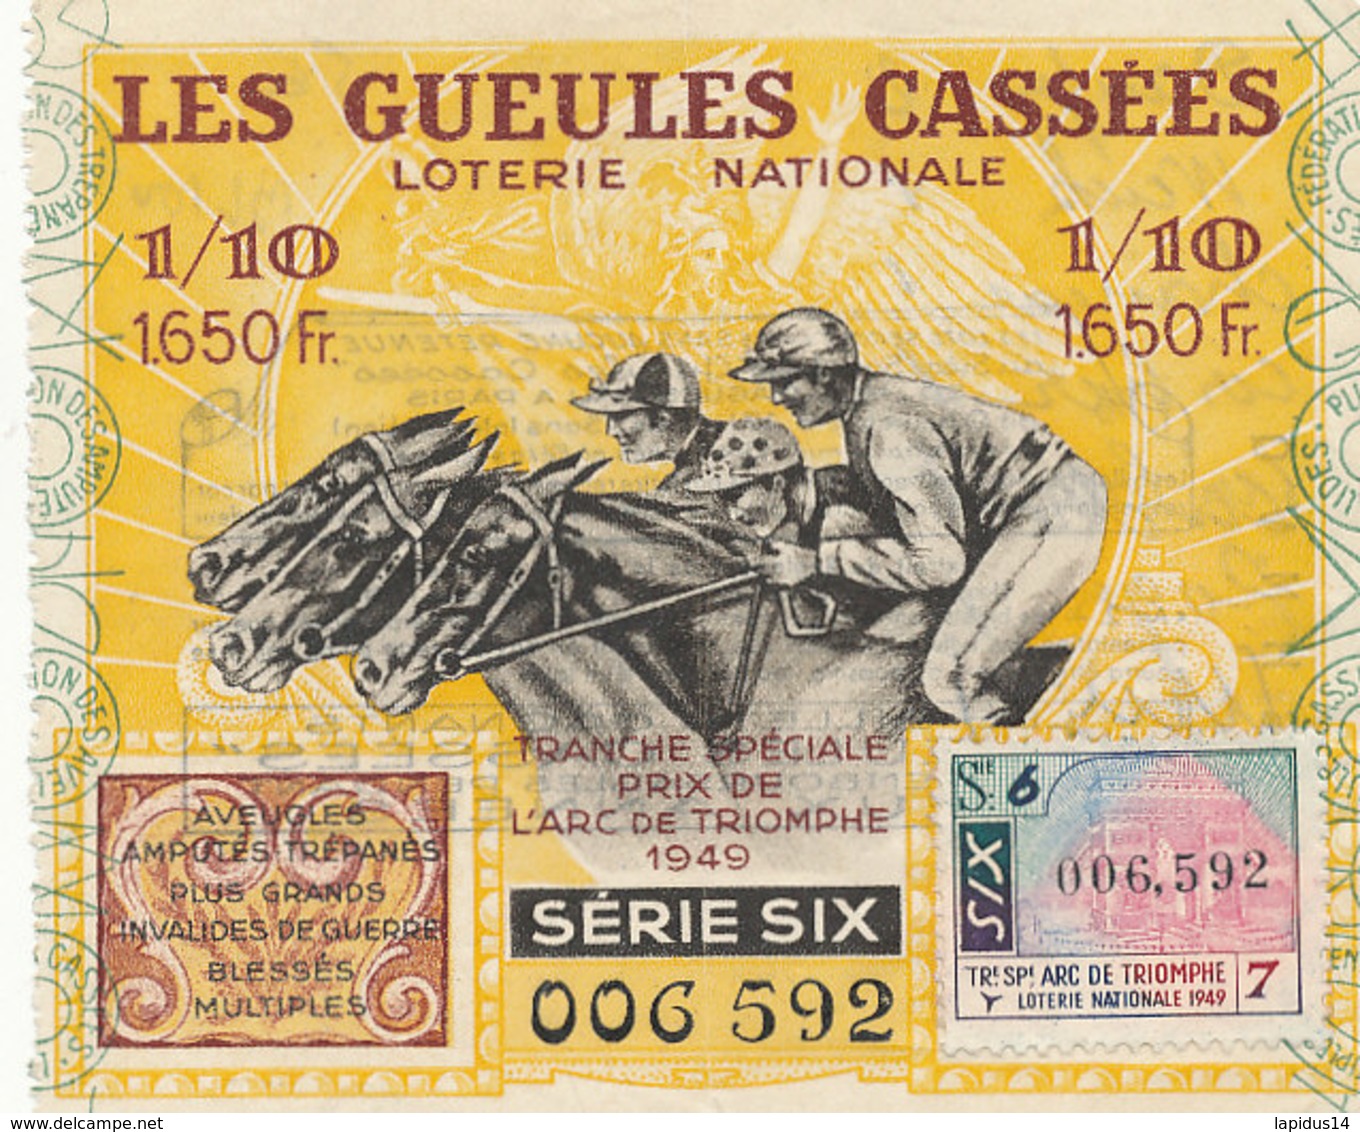 BL 100 / BILLET  LOTERIE NATIONALE  LES GUEULES CASSEES  PRIX DE L'ARC DE TRIOMPHE    1949 - Billets De Loterie